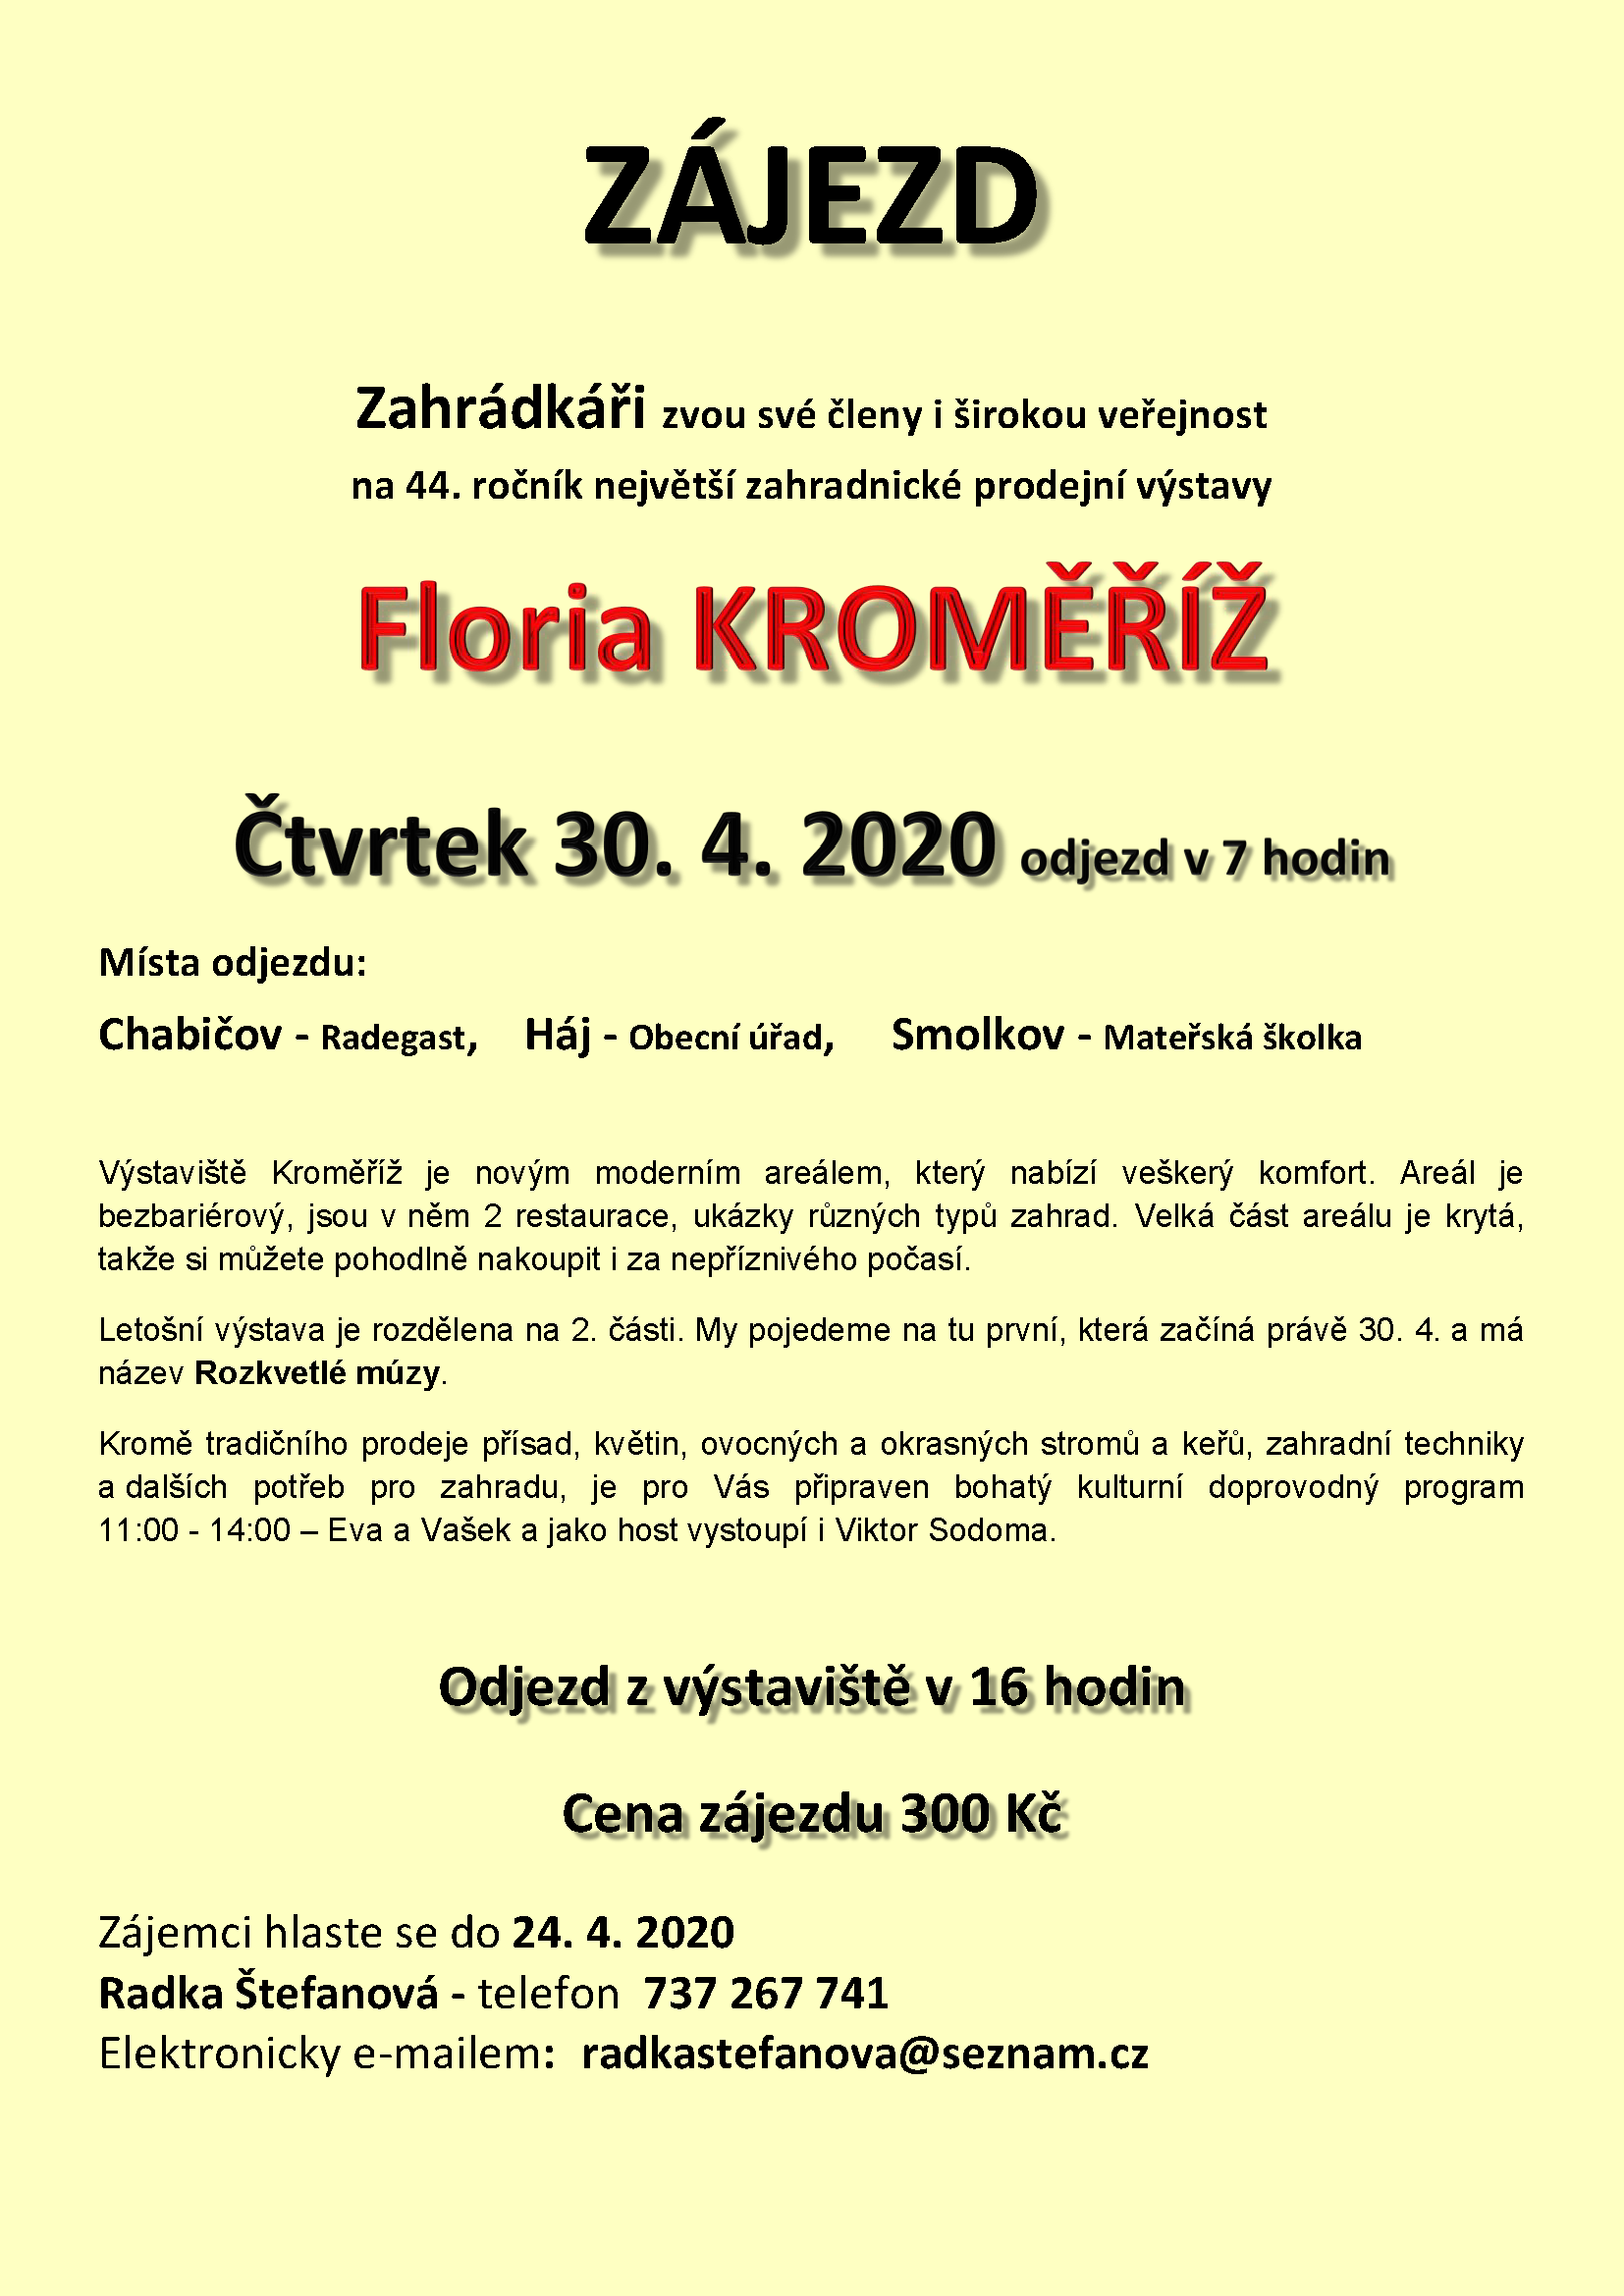 2020-floria.png, 142kB